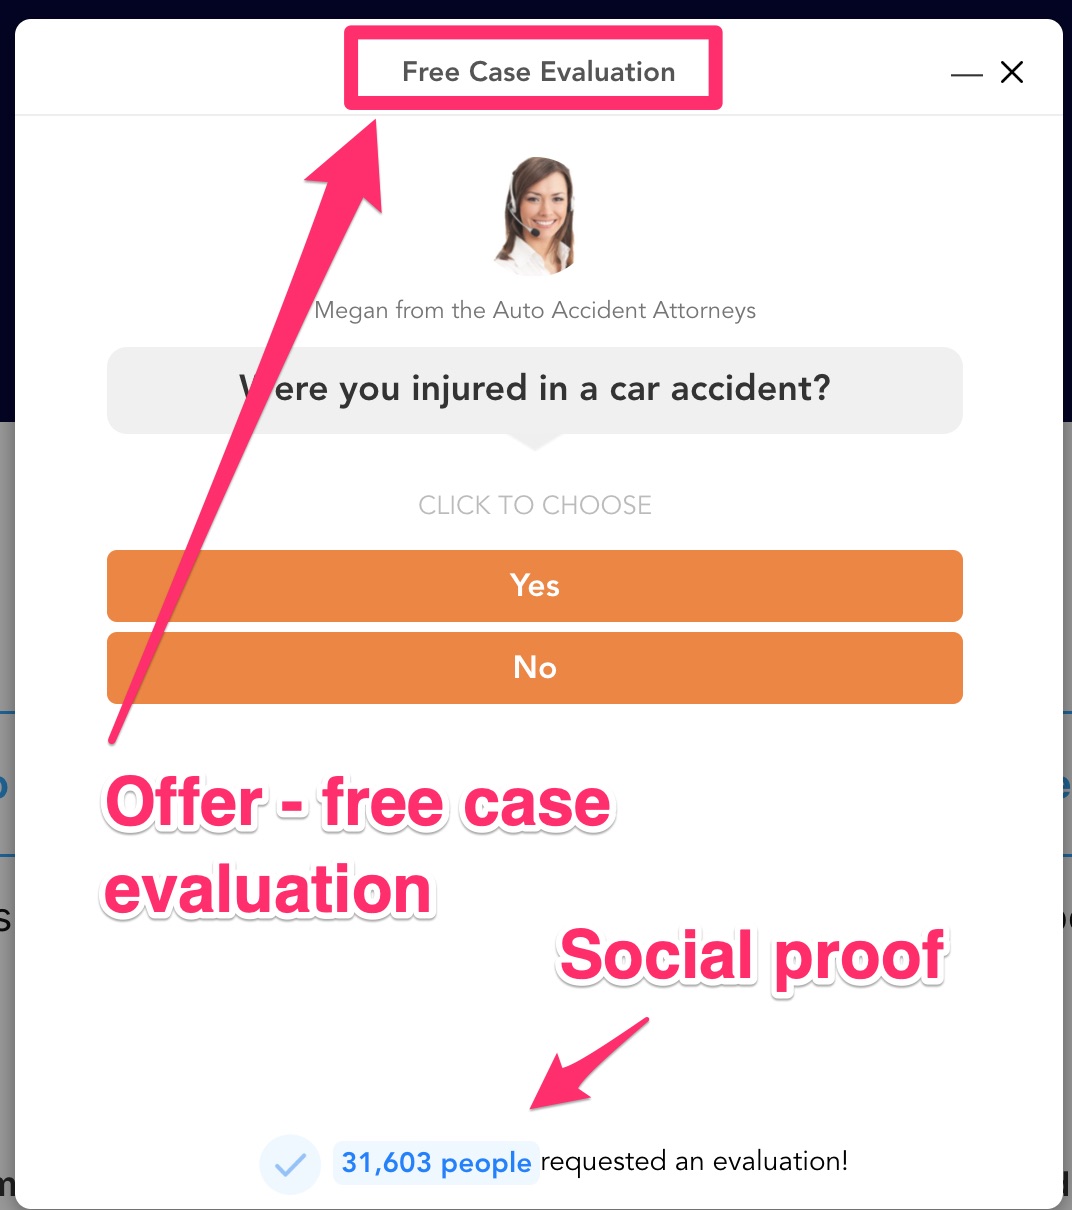 make offer: free case evaluation